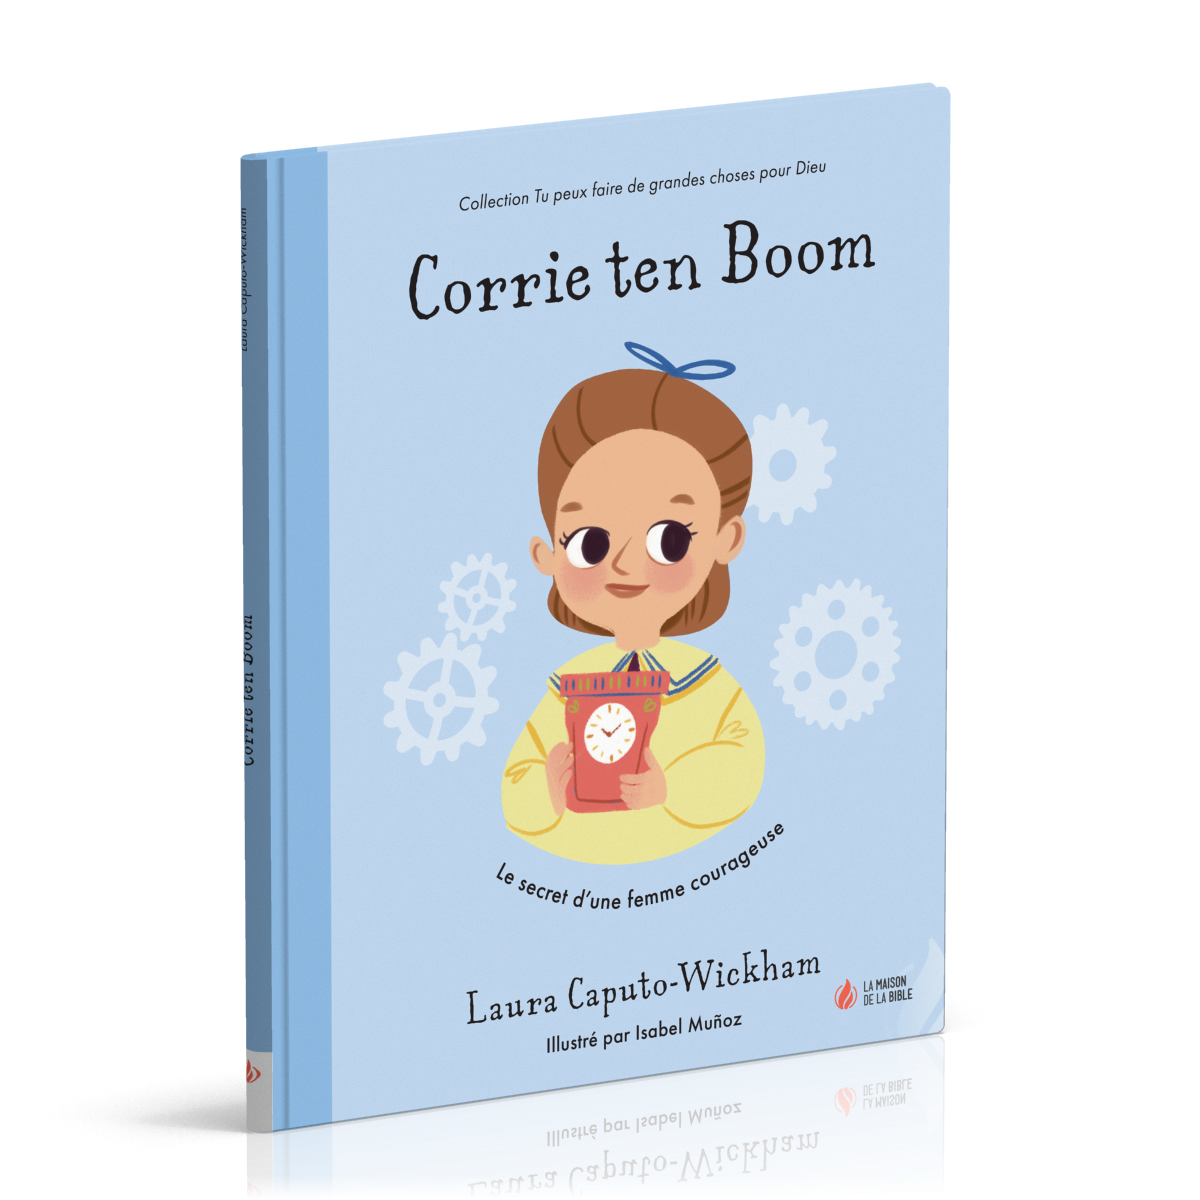 Corrie ten Boom - Le secret d'une femme courageuse